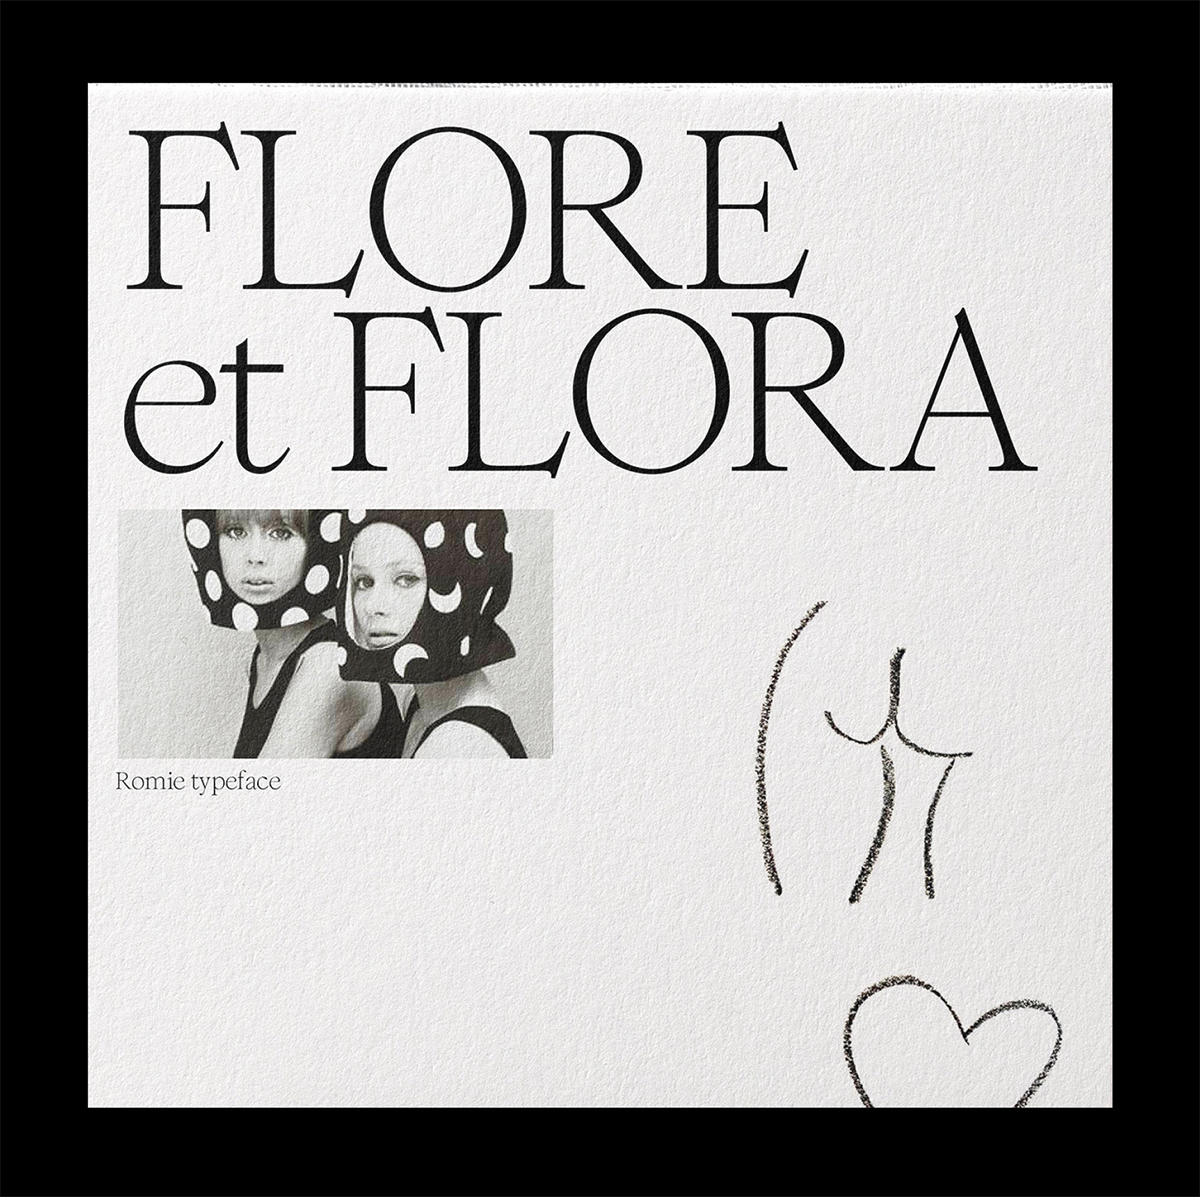 Romie typeface Flore